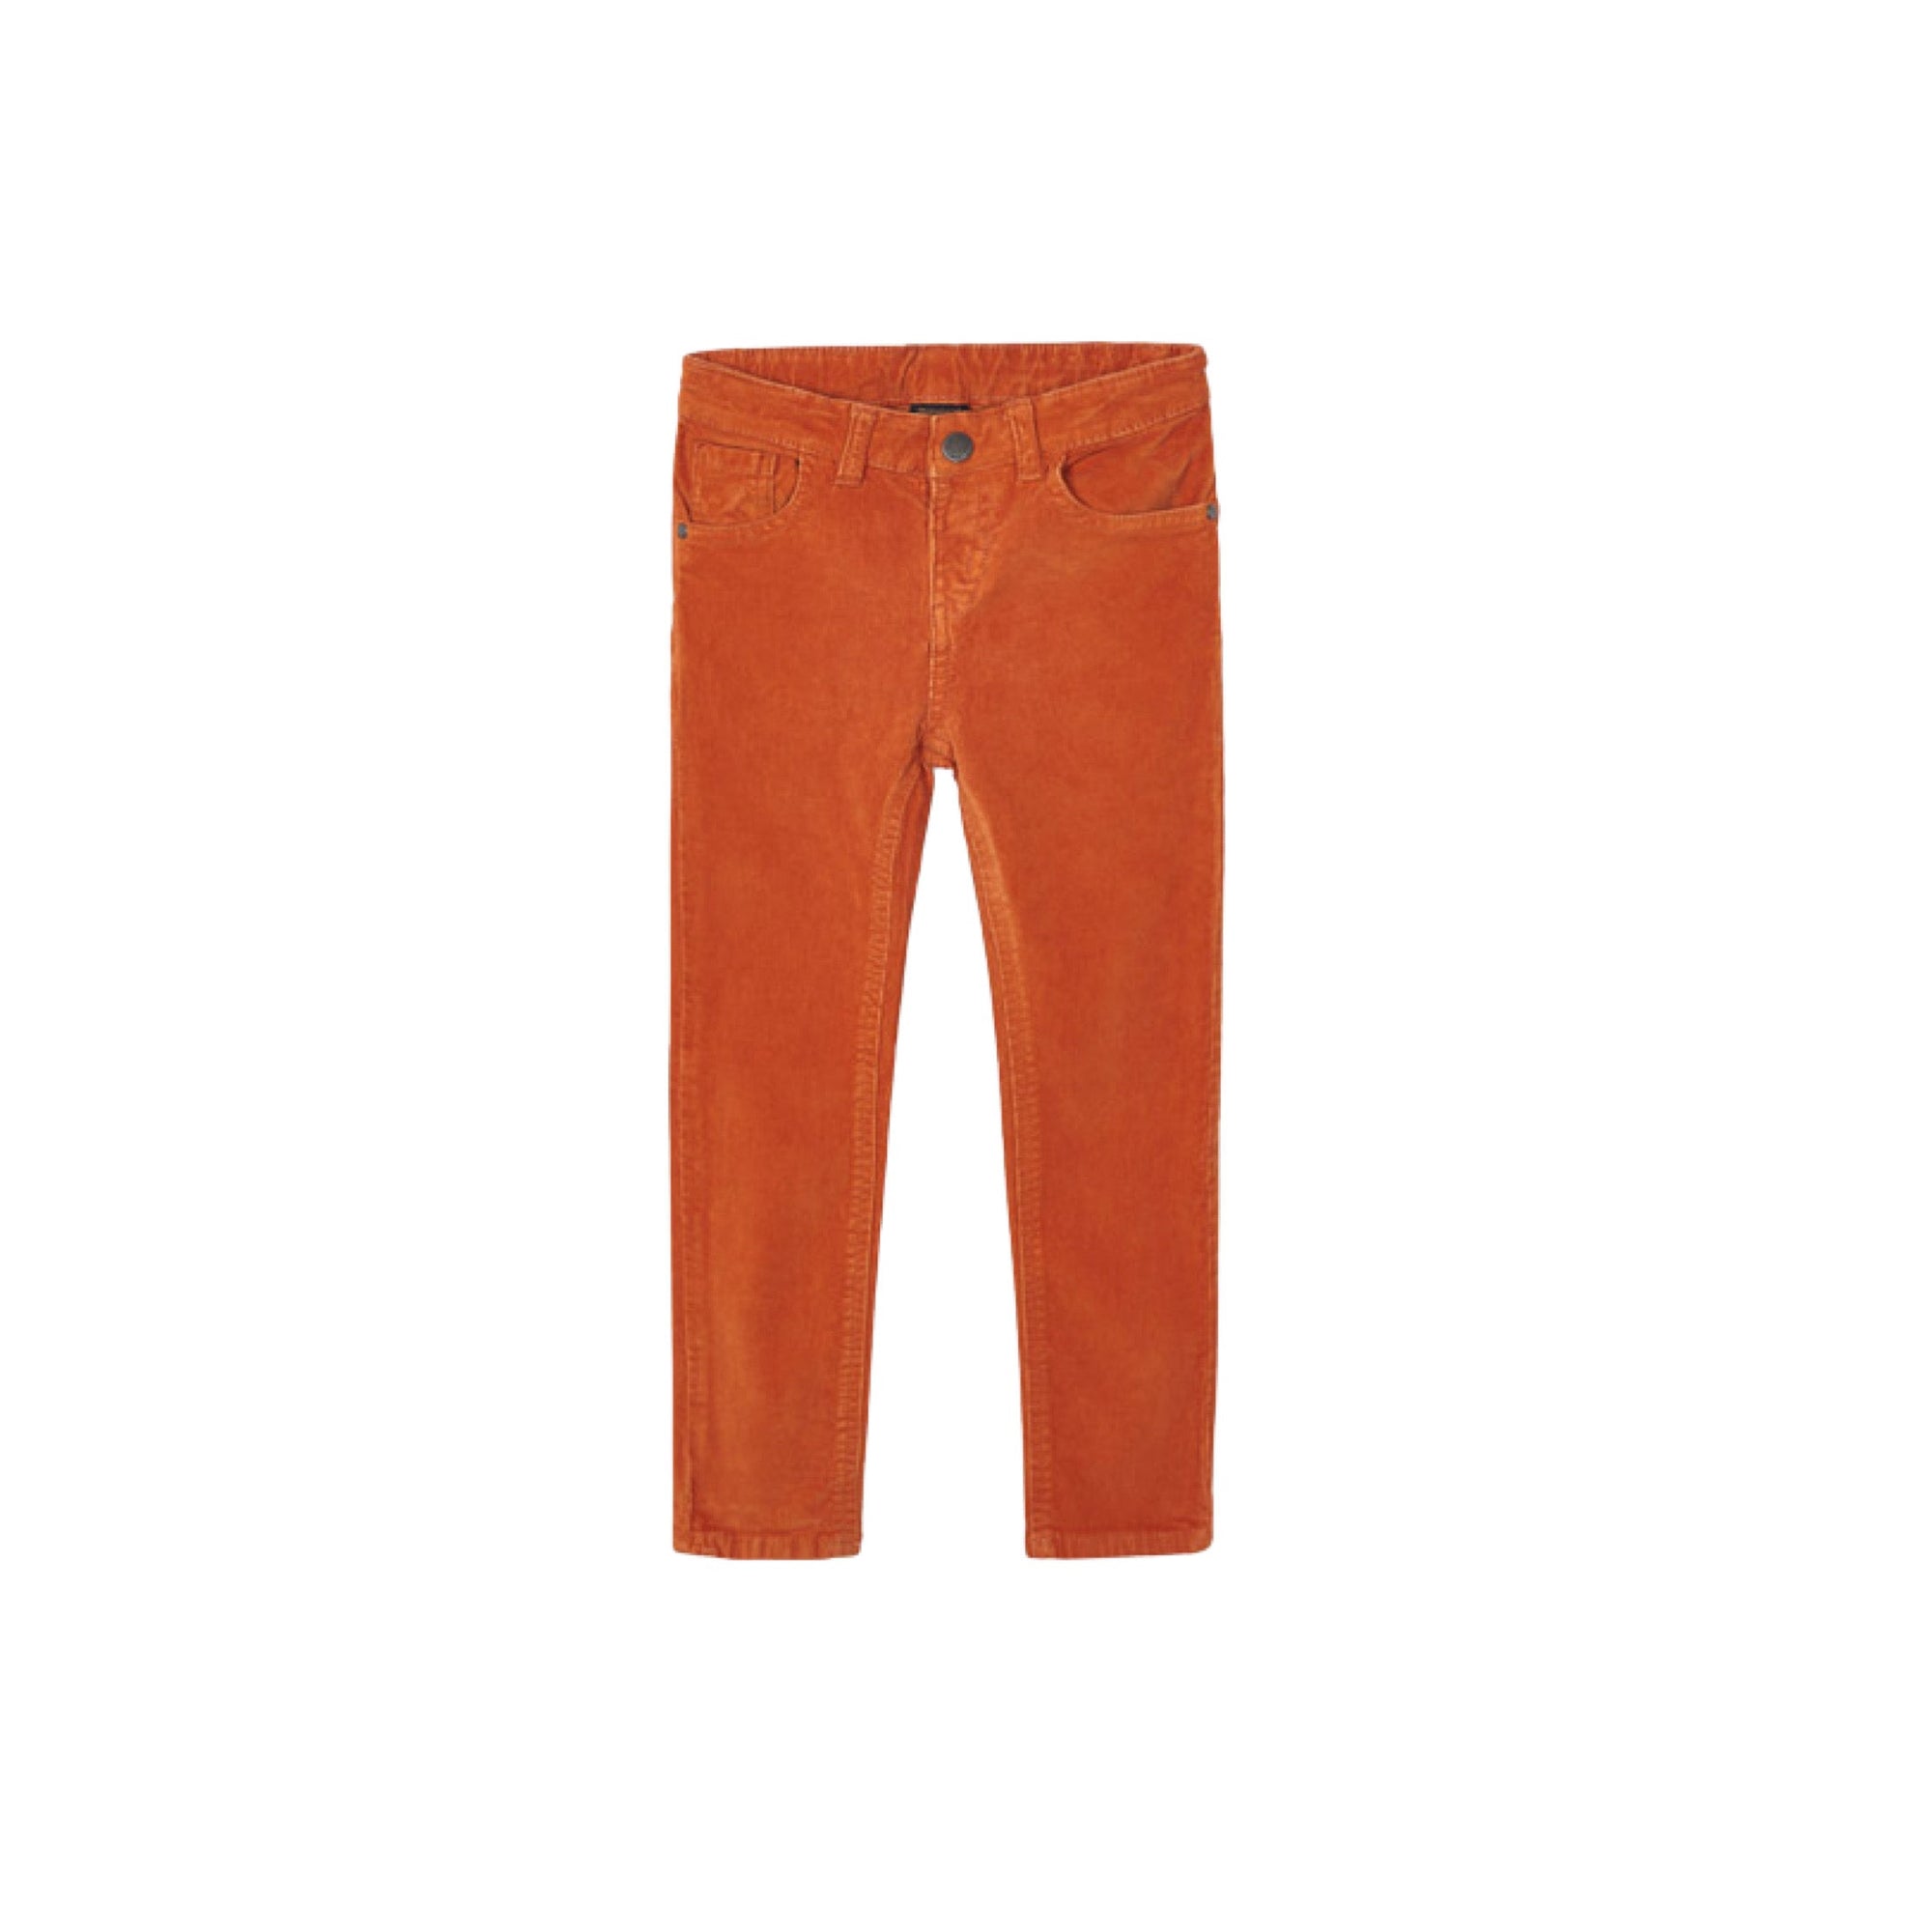 Orange Slim Fit Corduroy Pants